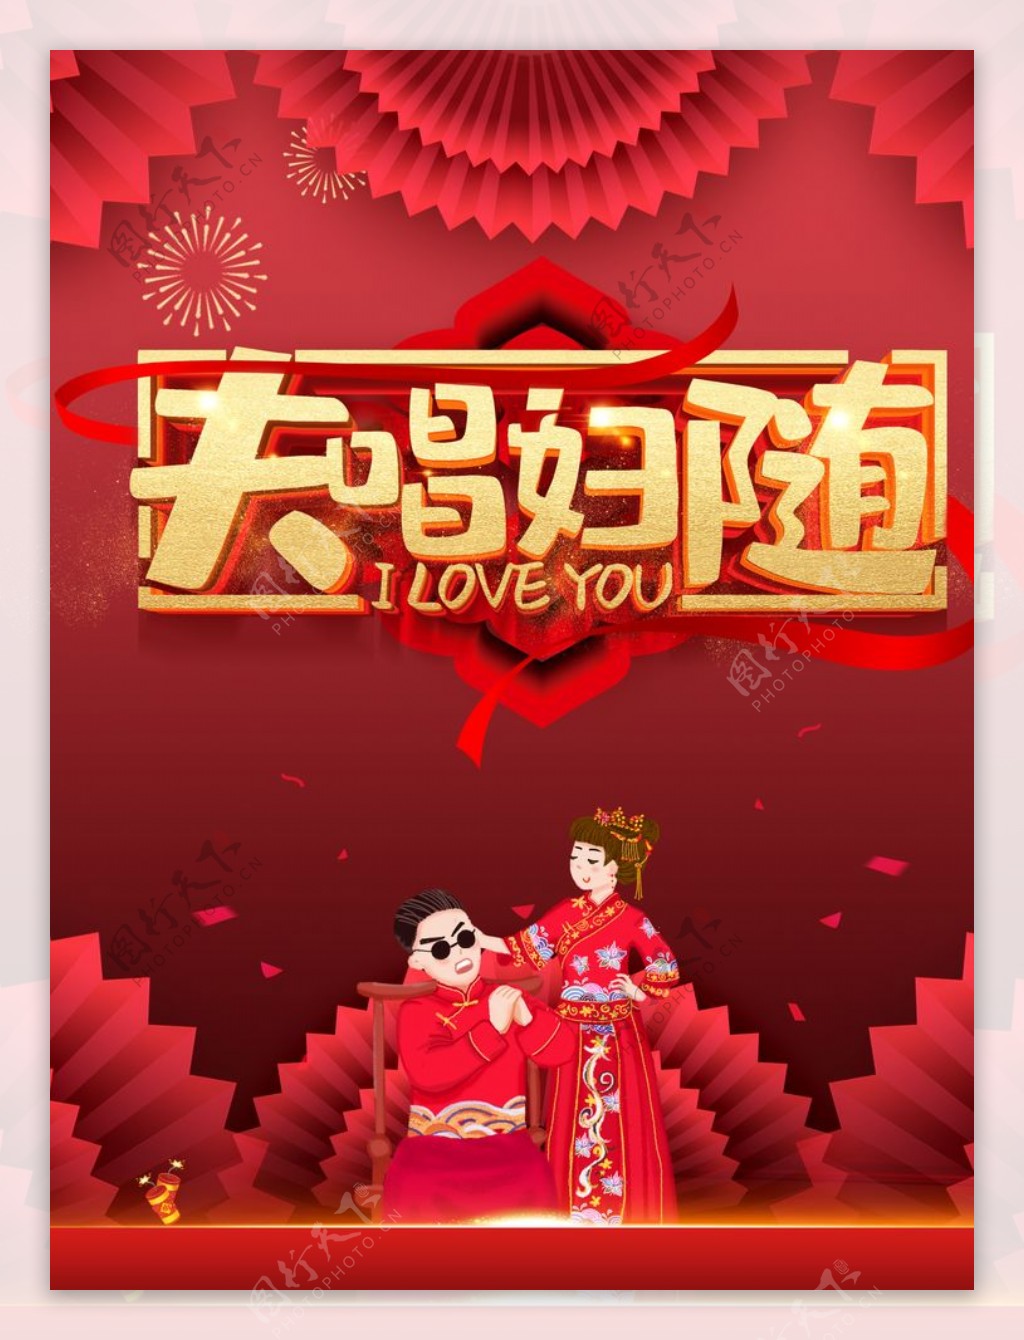 红色喜庆夫唱妇随中式婚礼海报